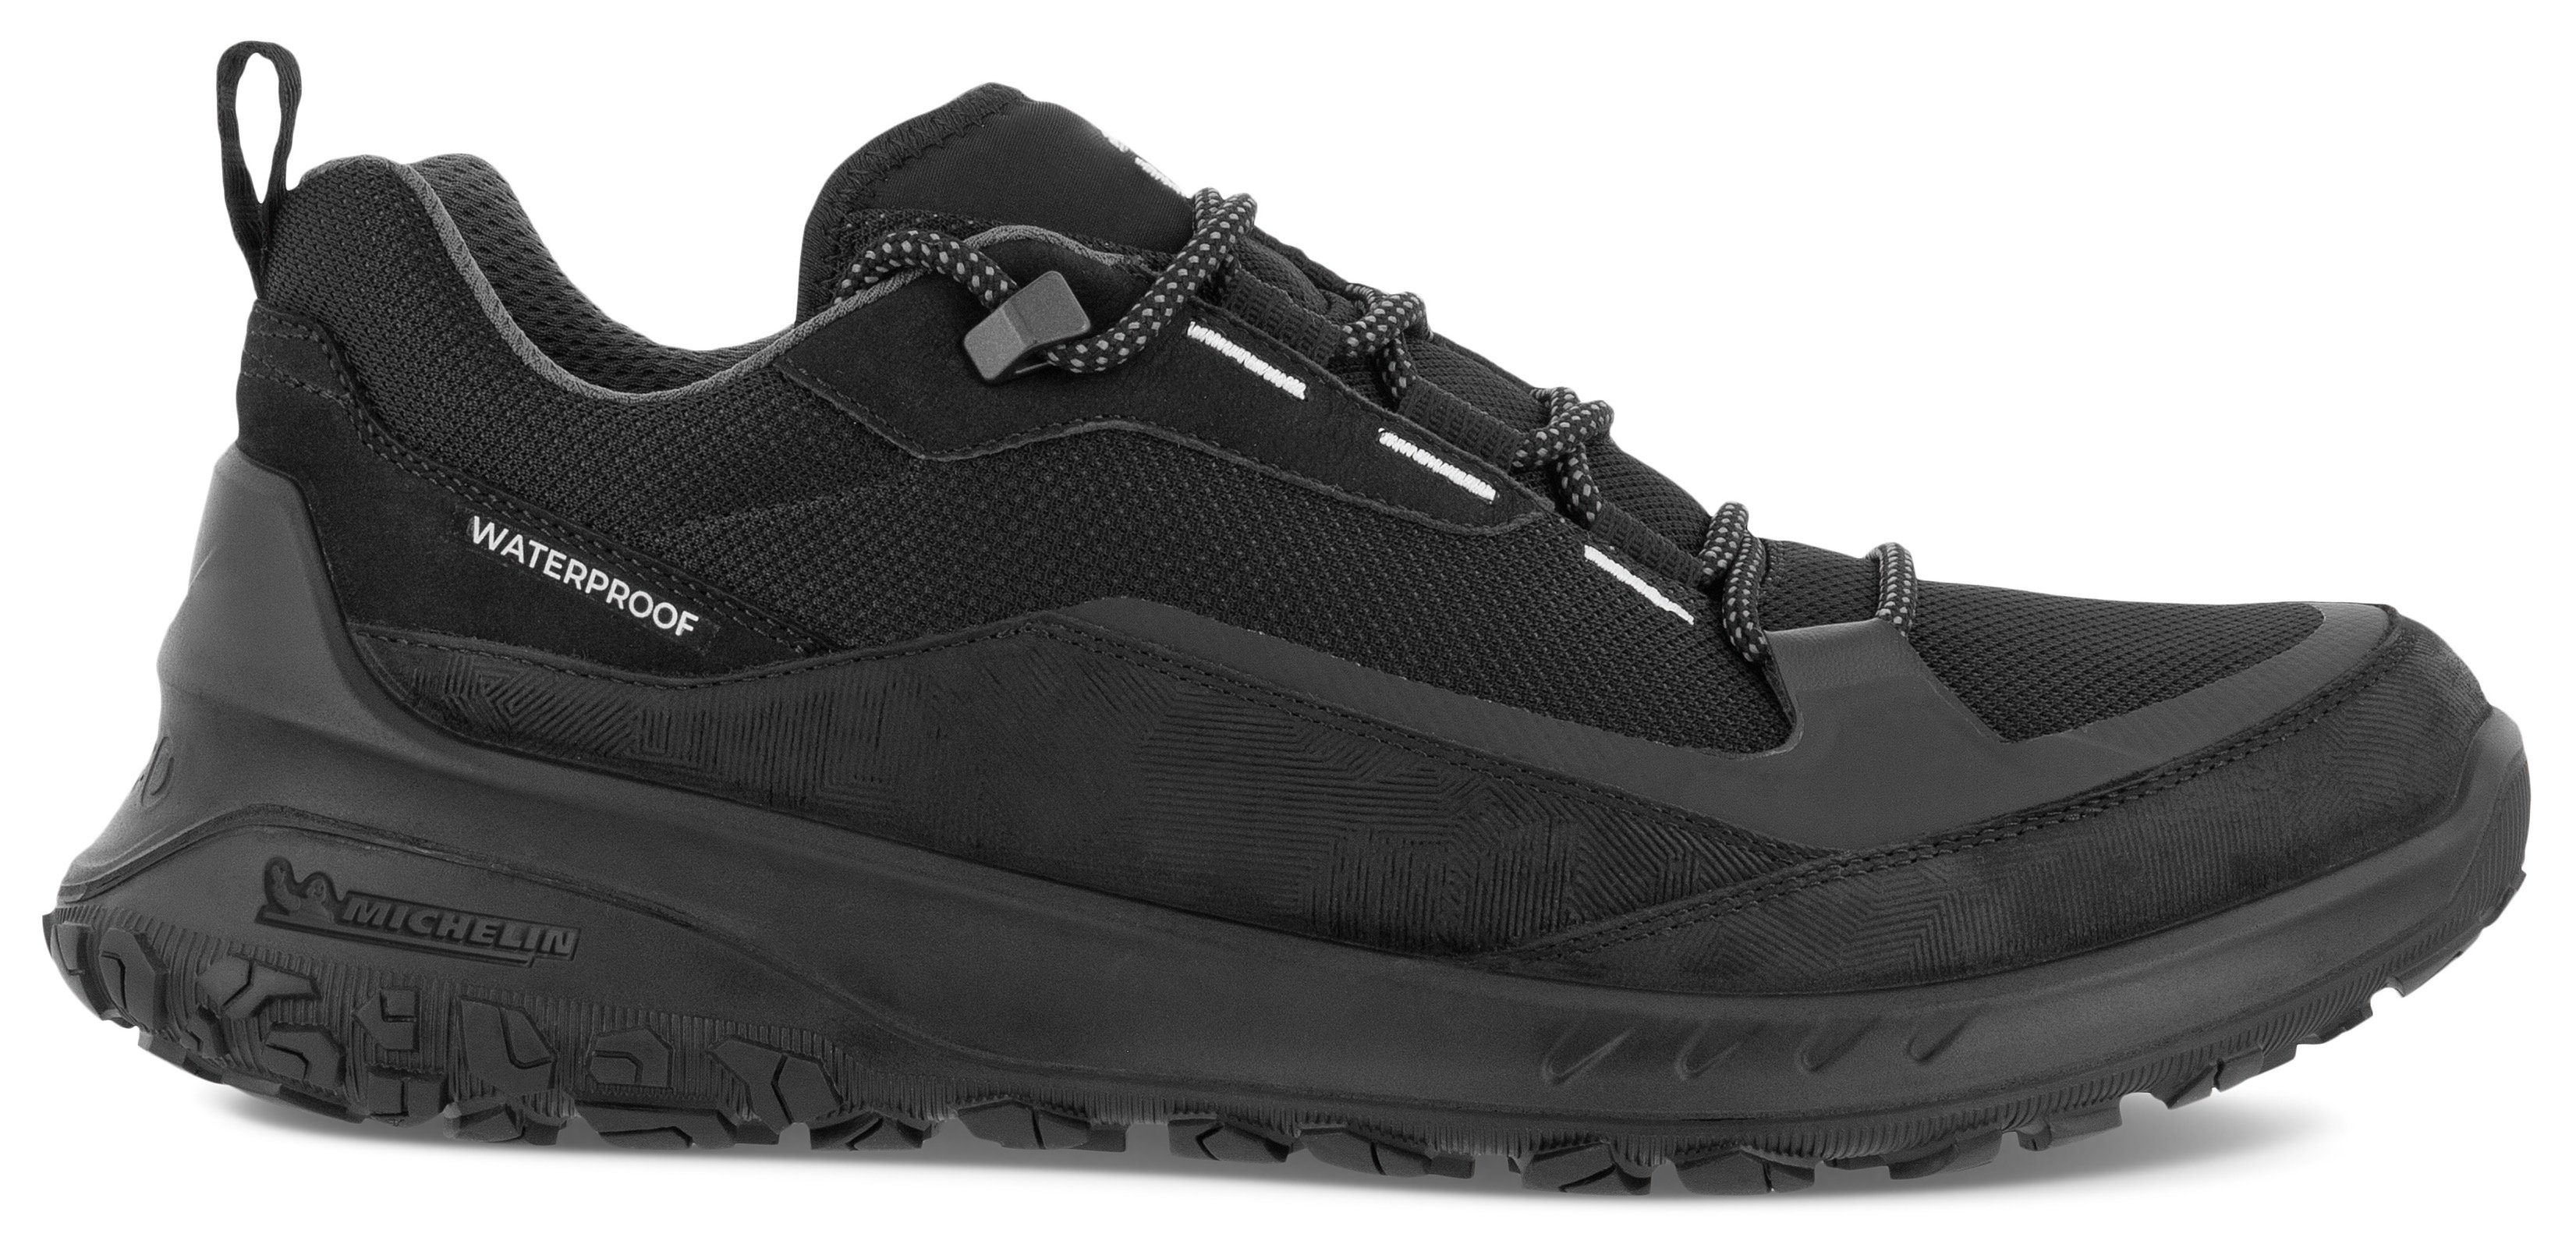 schwarz mit sportive Sneaker ULT-TRN Michelin-Technologie Laufsohle M Ecco